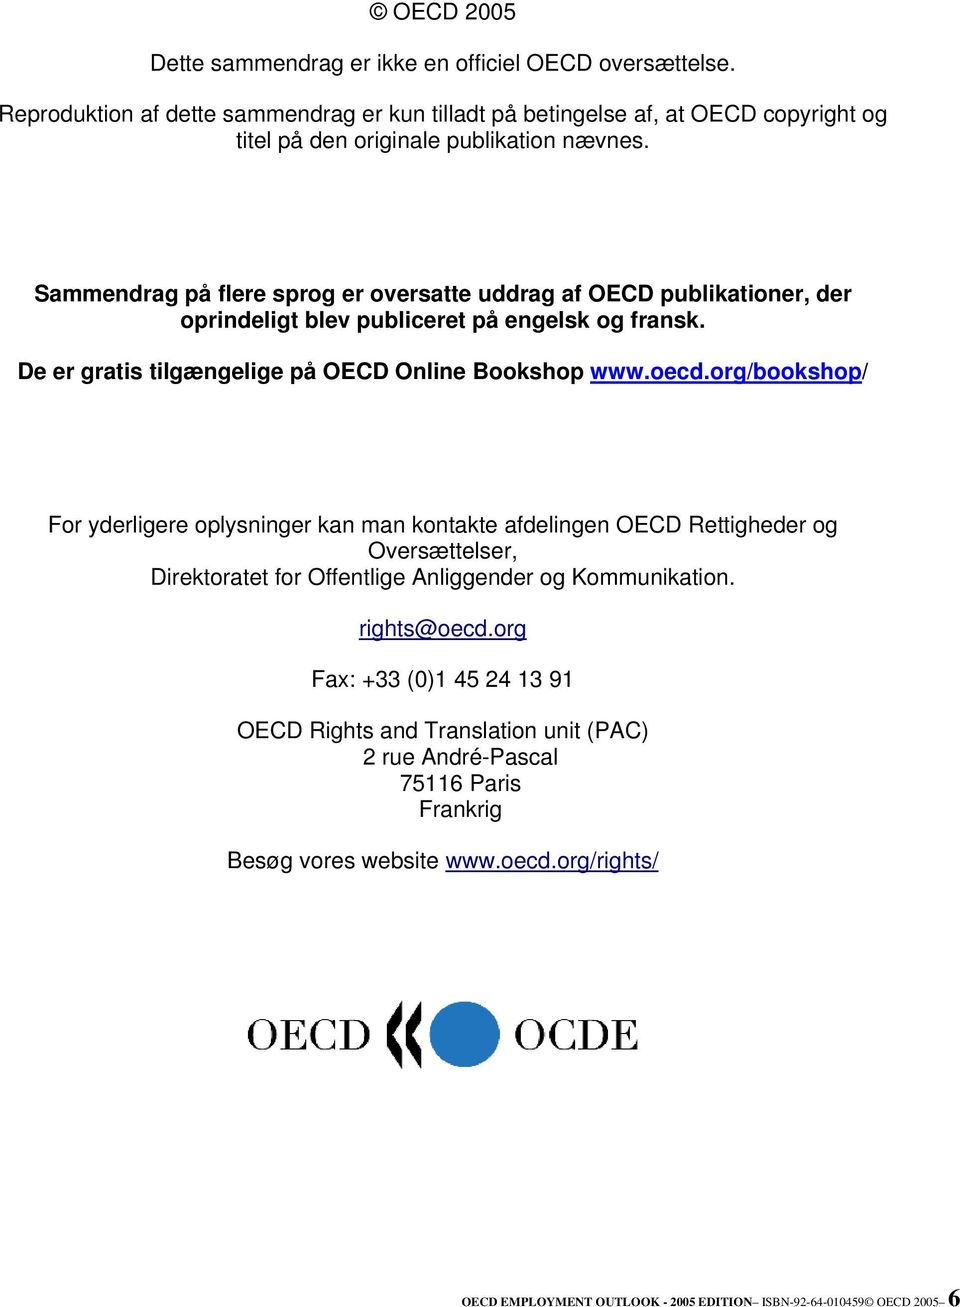 Sammendrag på flere sprog er oversatte uddrag af OECD publikationer, der oprindeligt blev publiceret på engelsk og fransk. De er gratis tilgængelige på OECD Online Bookshop www.oecd.